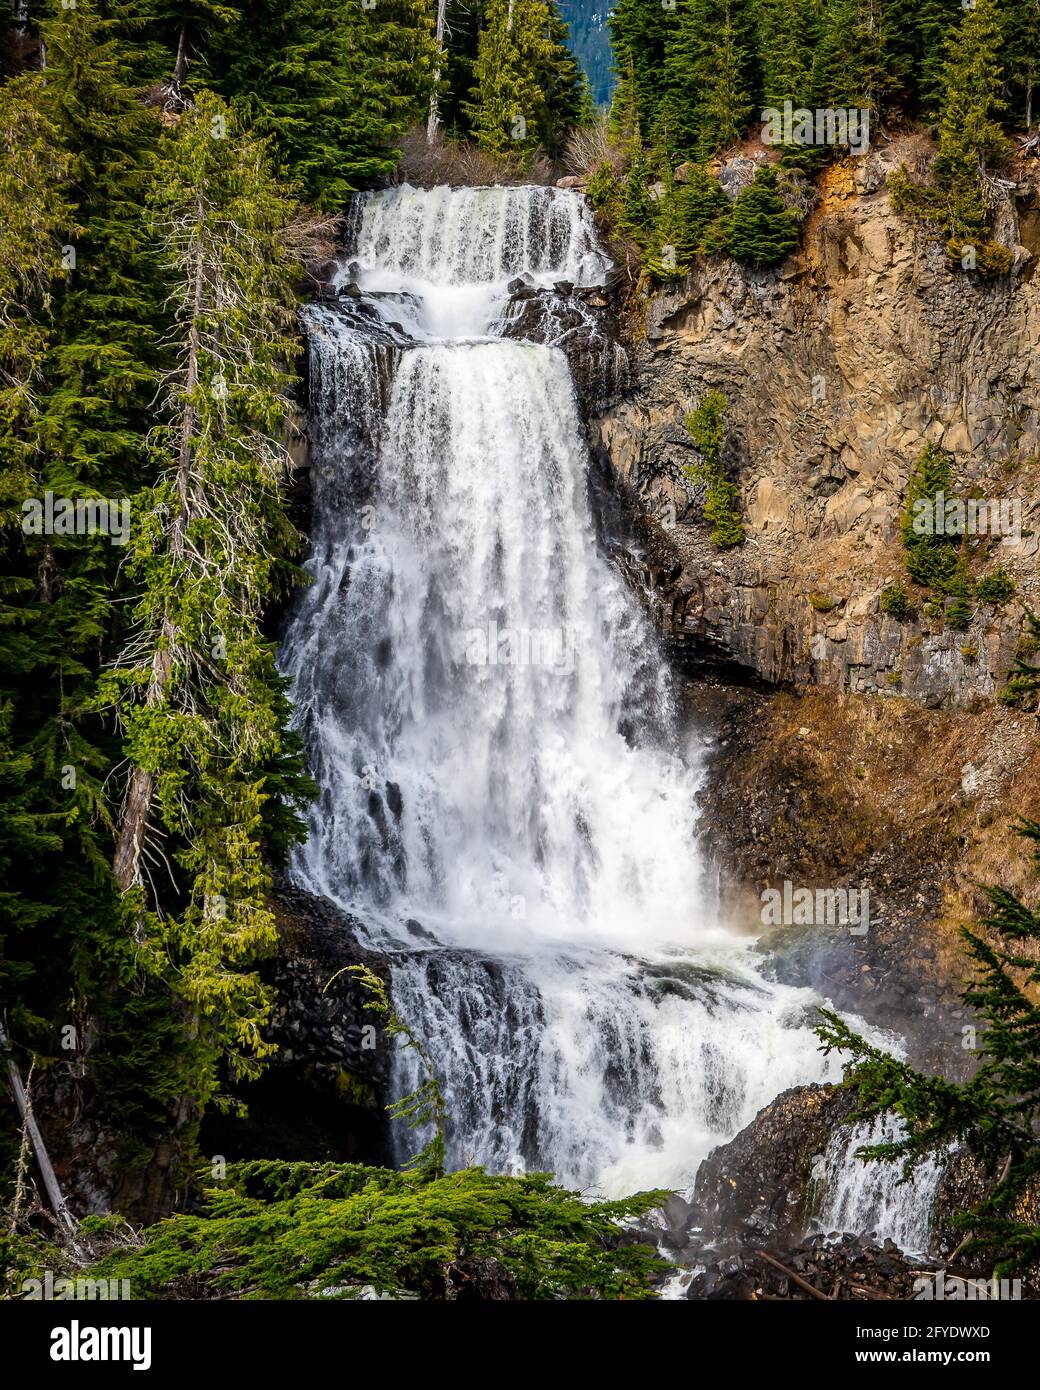 La fusione della neve primaverile rende belle Alexander Falls, una cascata su Madeley Creek, nella Callaghan Valley vicino a Whistler British Columbia, Canada Foto Stock